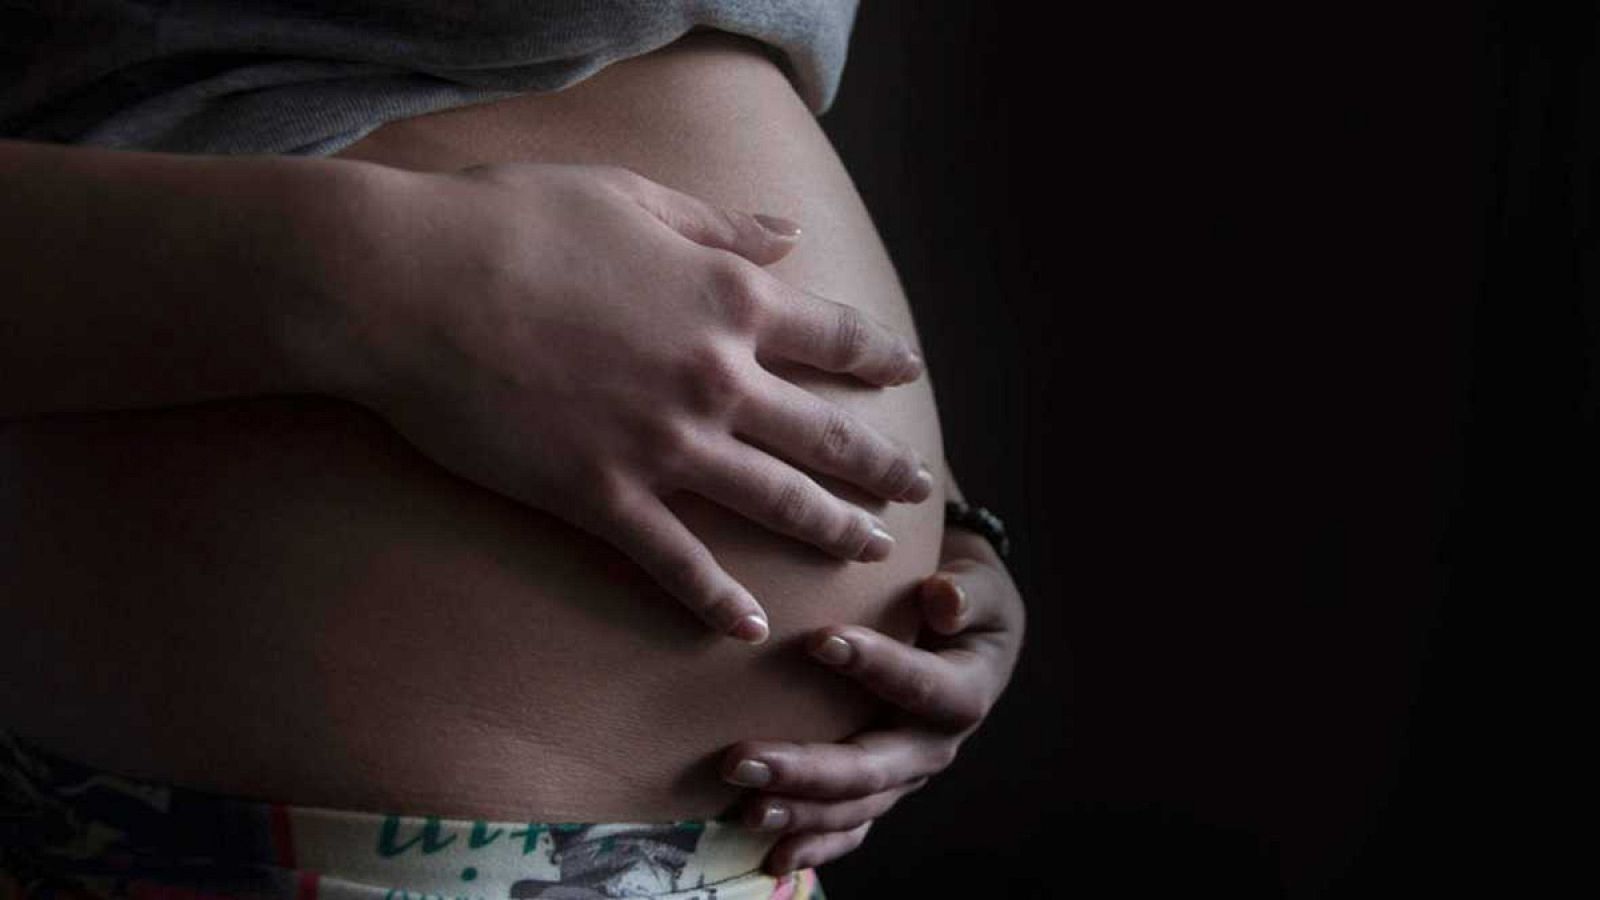 El tercer trimestre de embarazo "es cuando más desciende" la inmunidad materna.